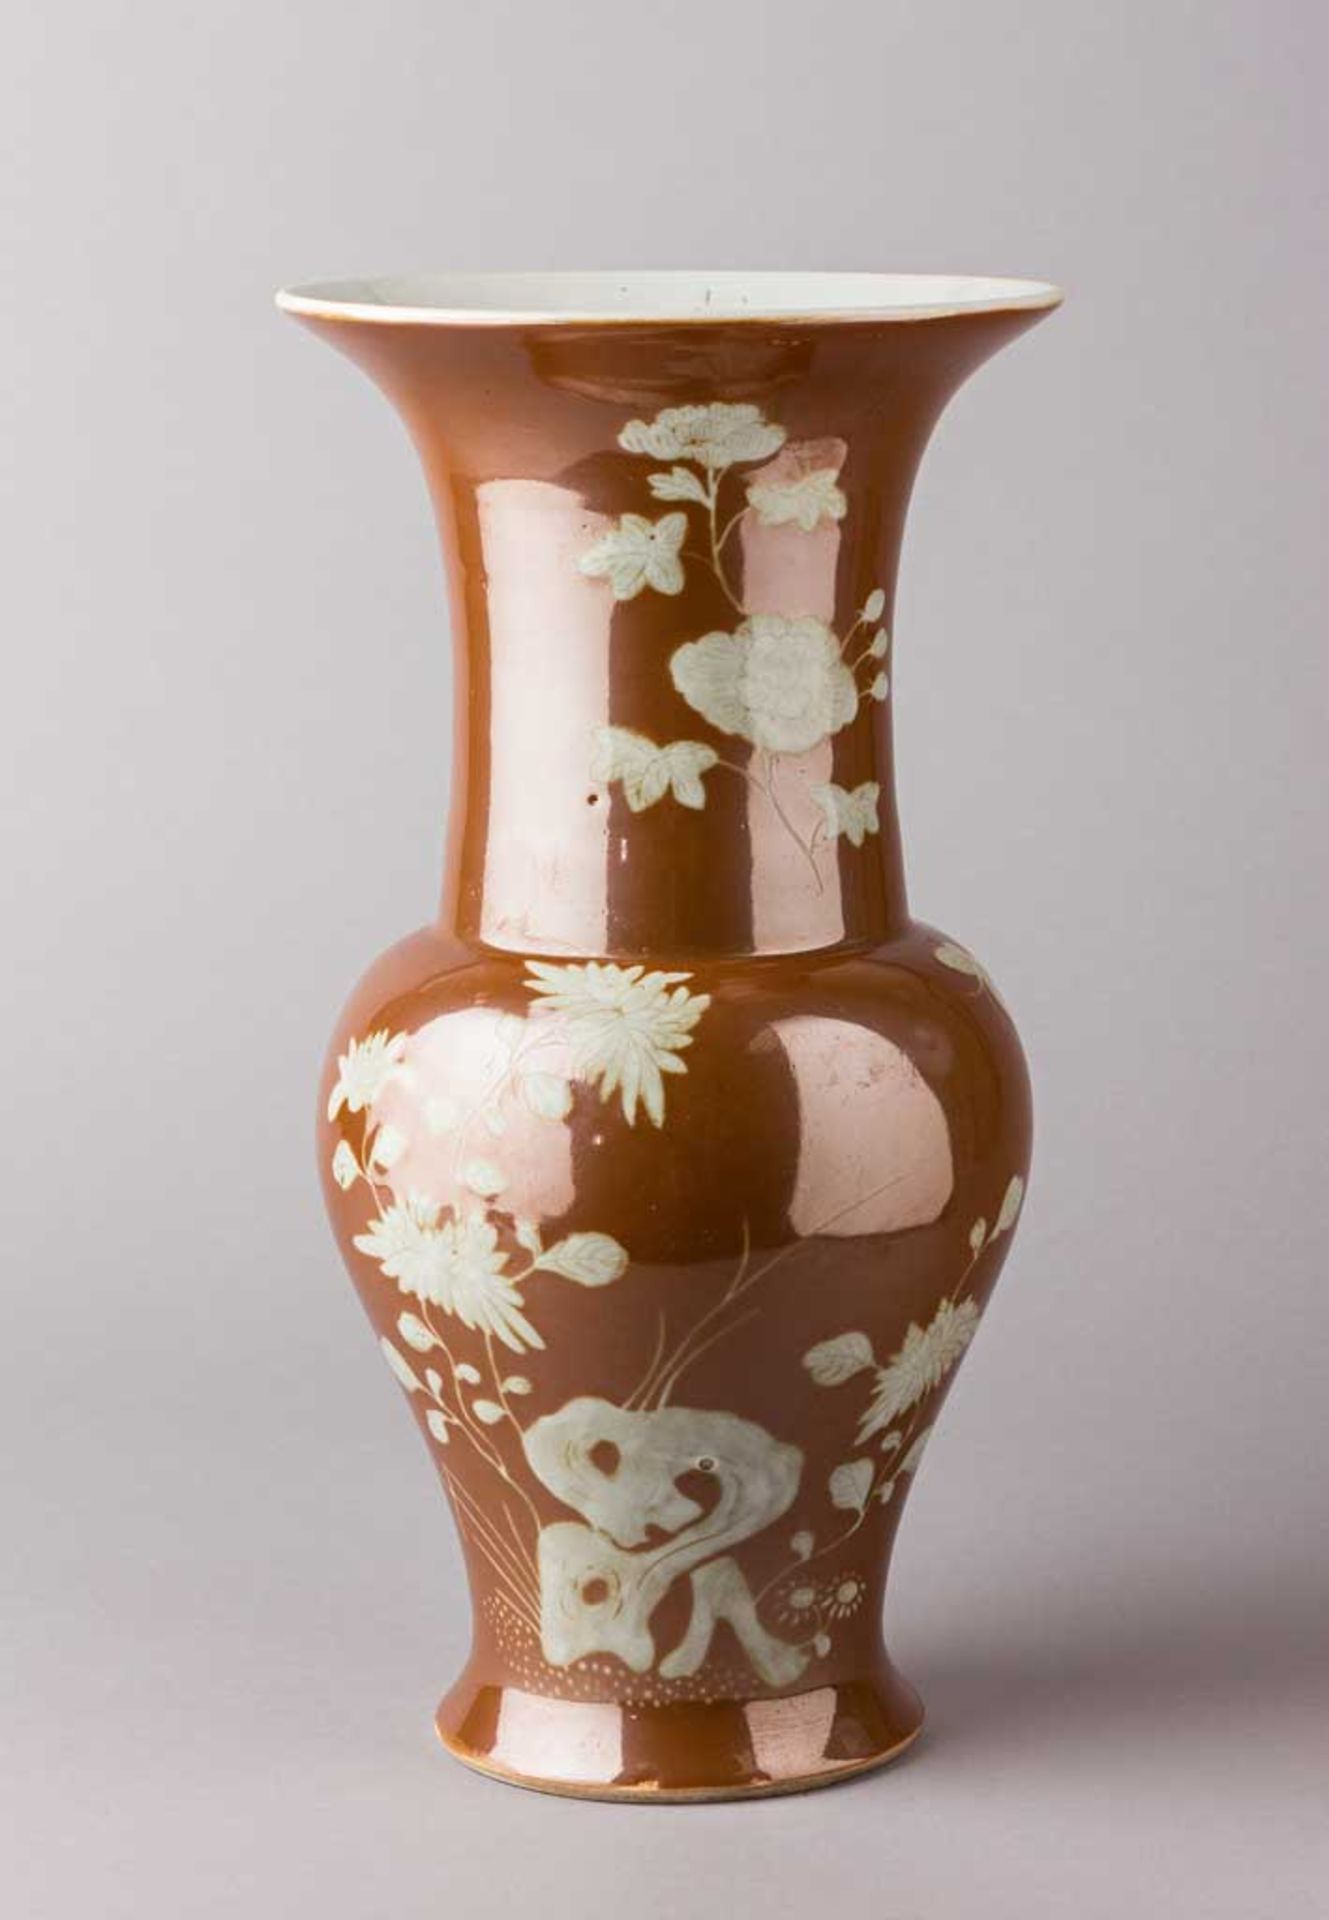 Balustervase. Café-au-lait-Glasur, weiß abgesetzt mit Astwerk und Blüten. China, Qing-Dynastie. H 34